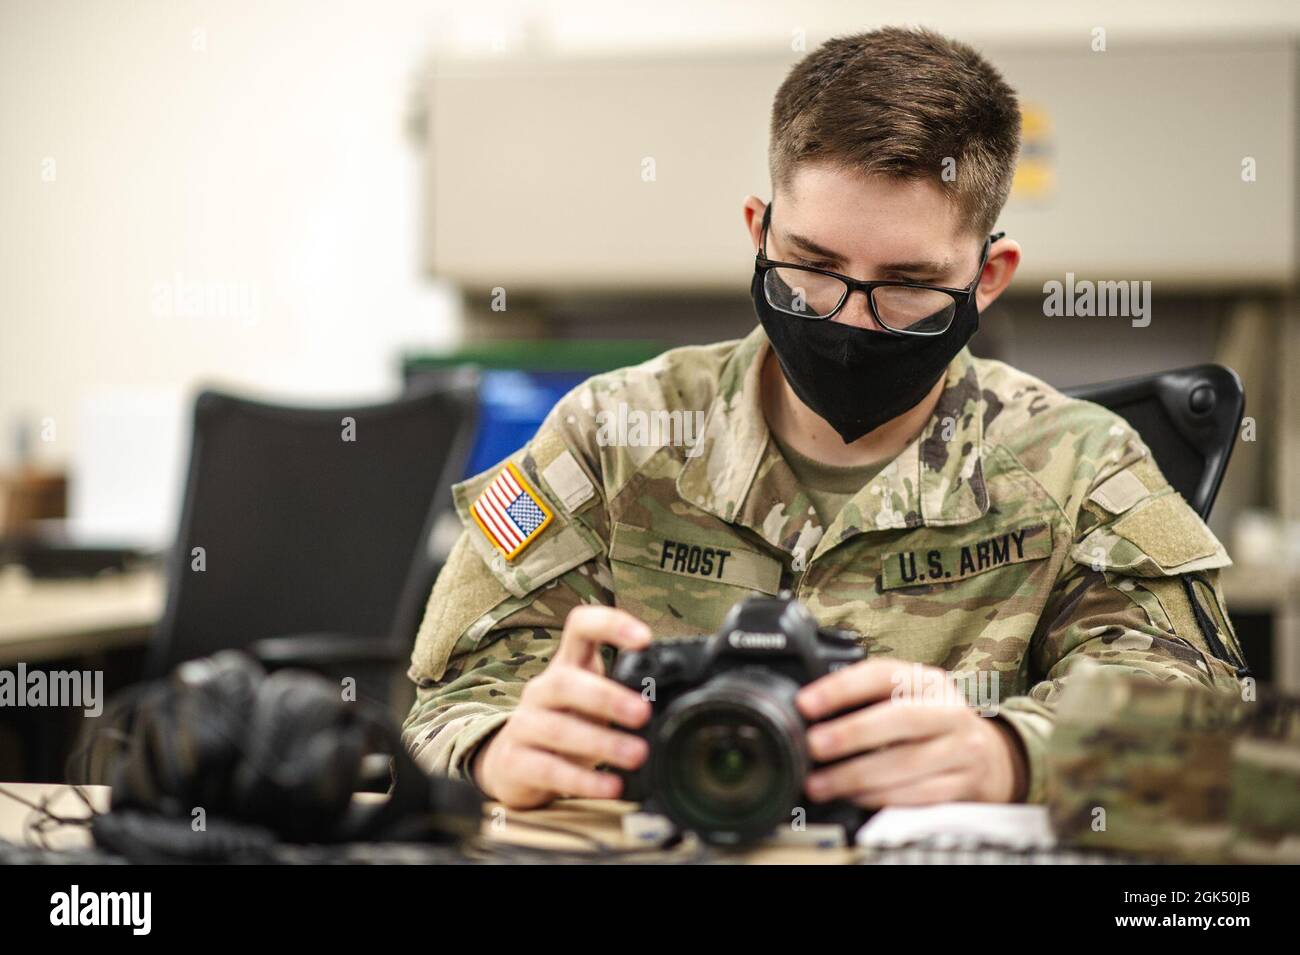 U.S. Army PFC. Zachery Frost, ein Spezialist für Dokumentation und Produktion von Kampfhandlungen, der dem ersten Zug, der 55. Signalgesellschaft (Kampfkamera), der 21. Signalbrigade, zugewiesen wurde, trainiert in seinem Hauptquartier in Fort George G. Meade, Maryland, auf Digitalkameraausrüstung. 3. August 2021. Stockfoto